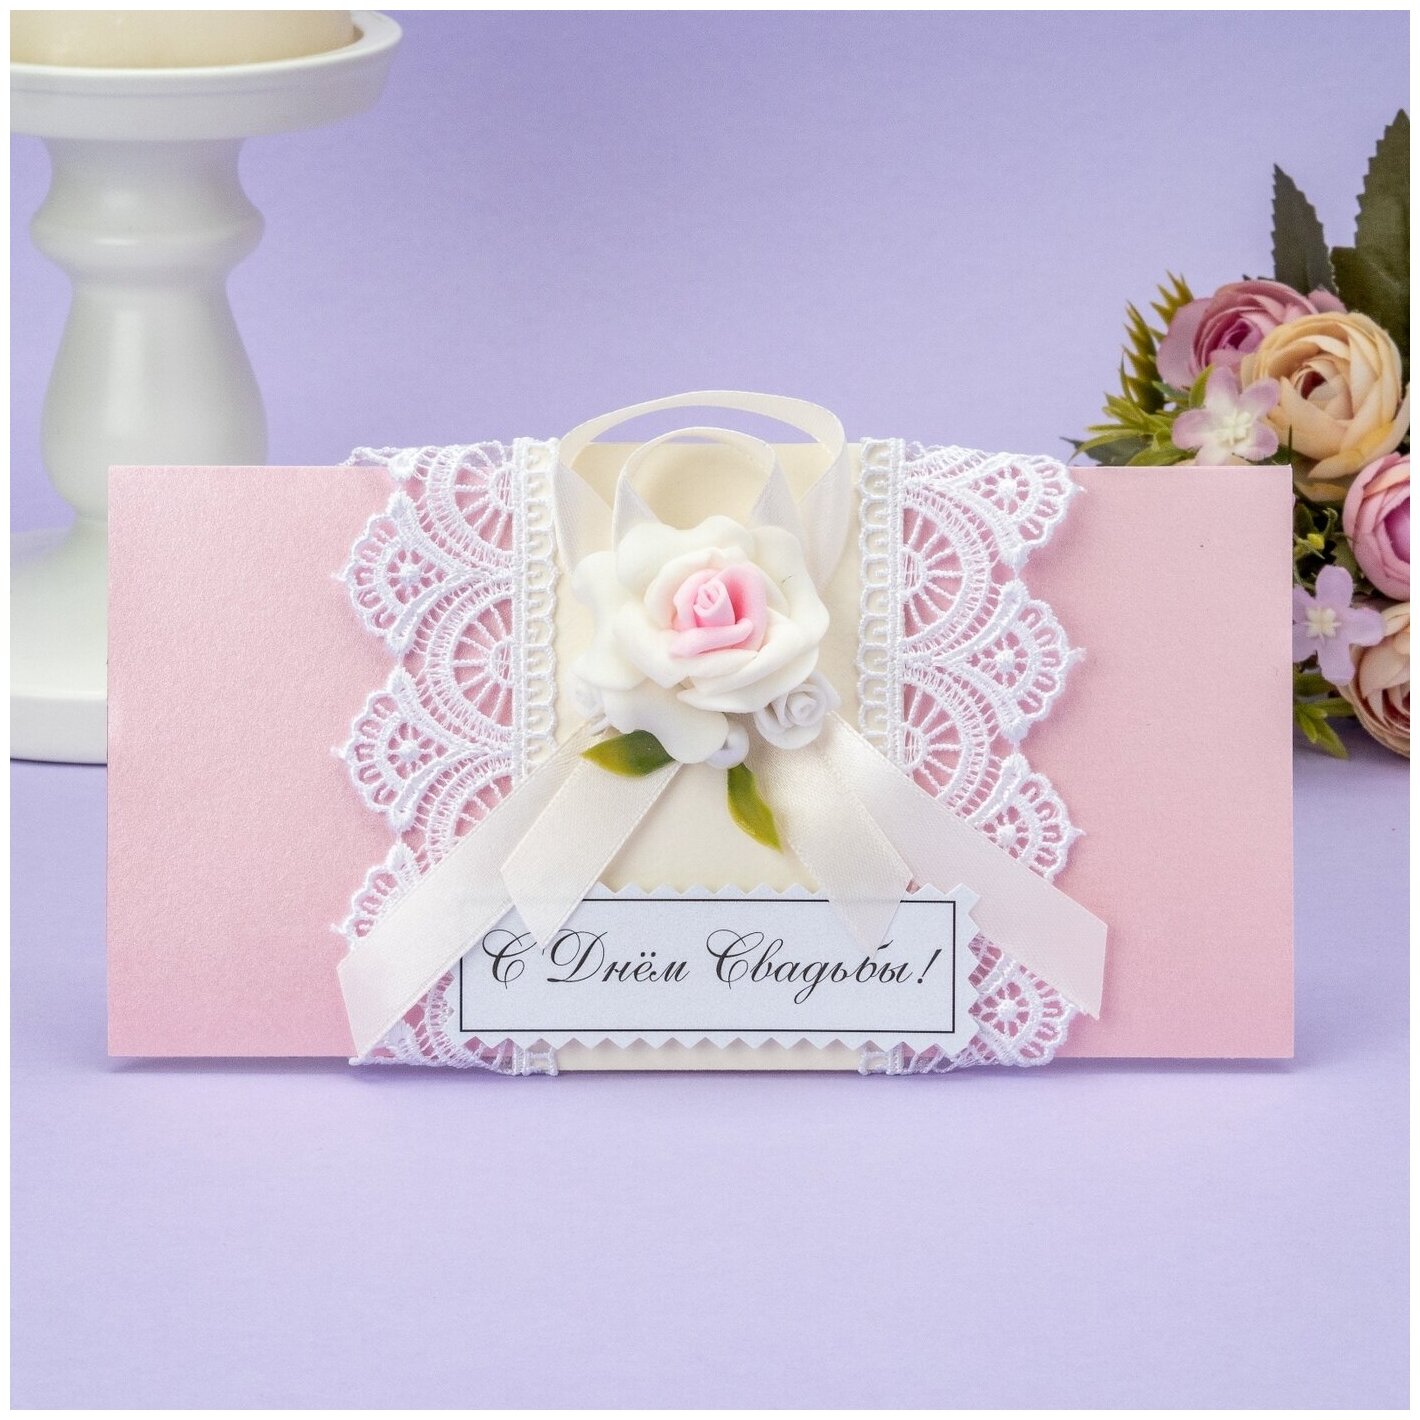 Конверт для денег на свадьбу из розового картона с белым кружевом, атласной лентой, латексной розой